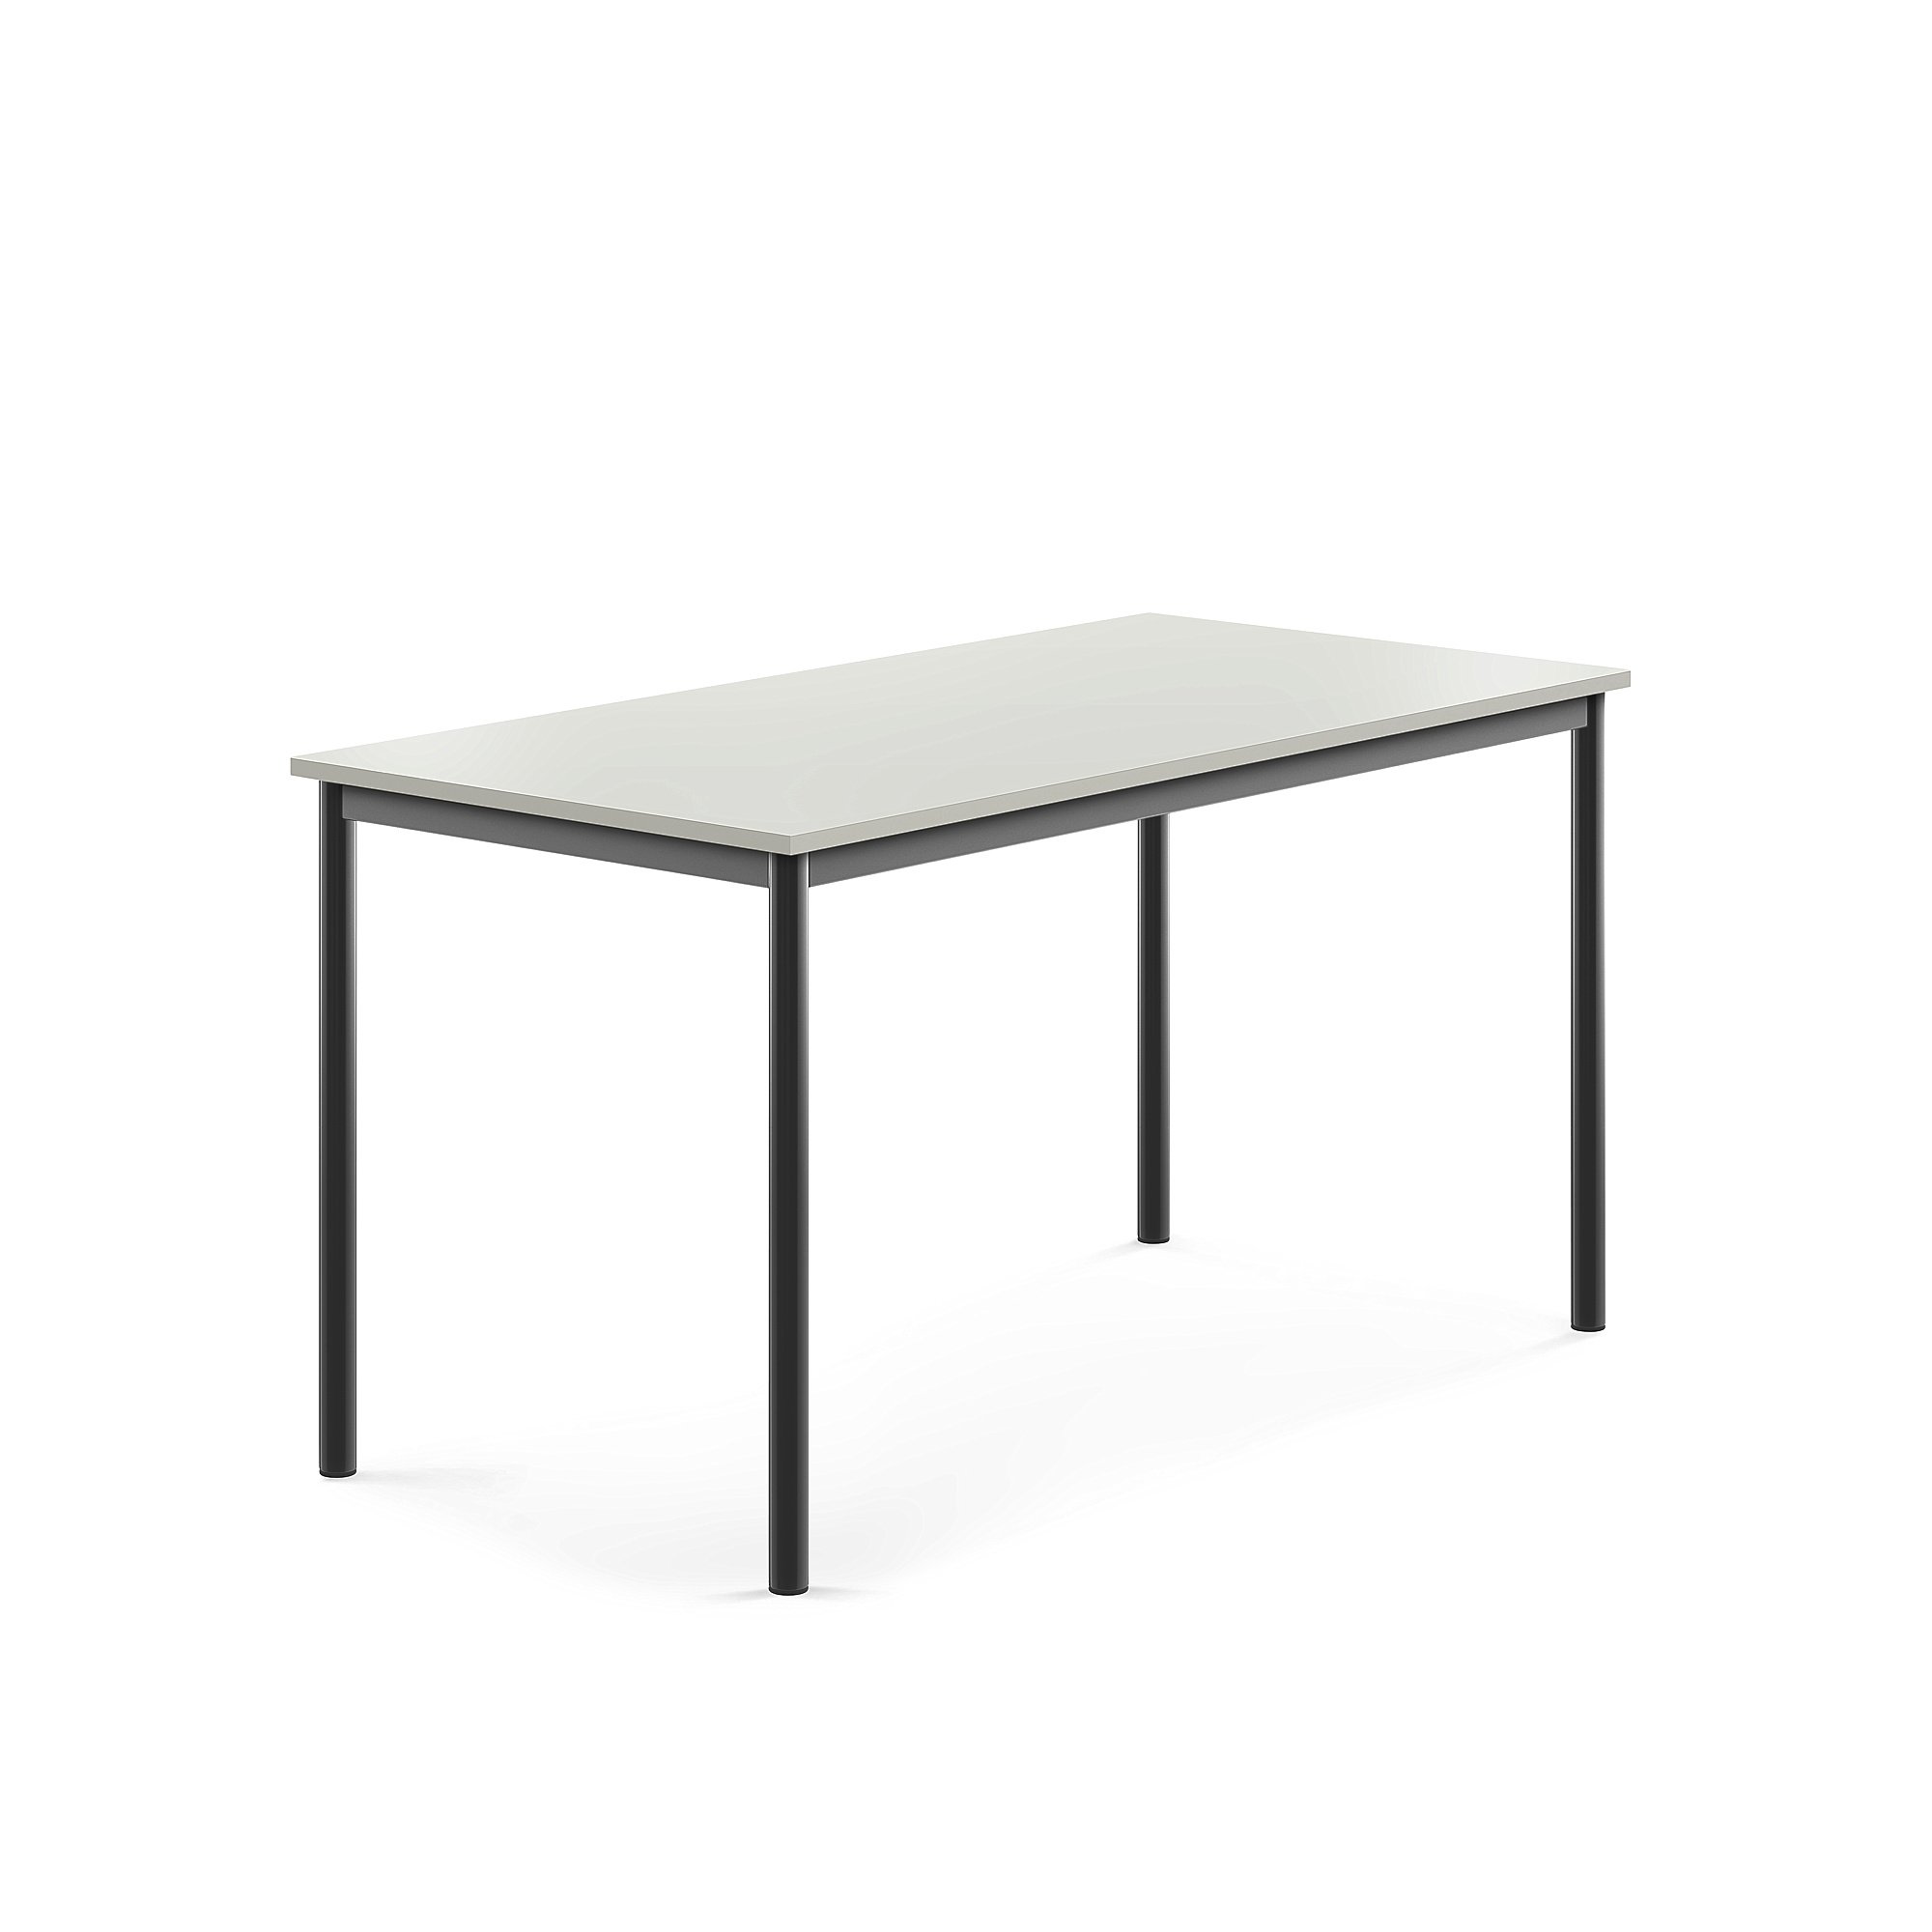 Stůl SONITUS, 1400x700x720 mm, antracitově šedé nohy, HPL deska tlumící hluk, šedá